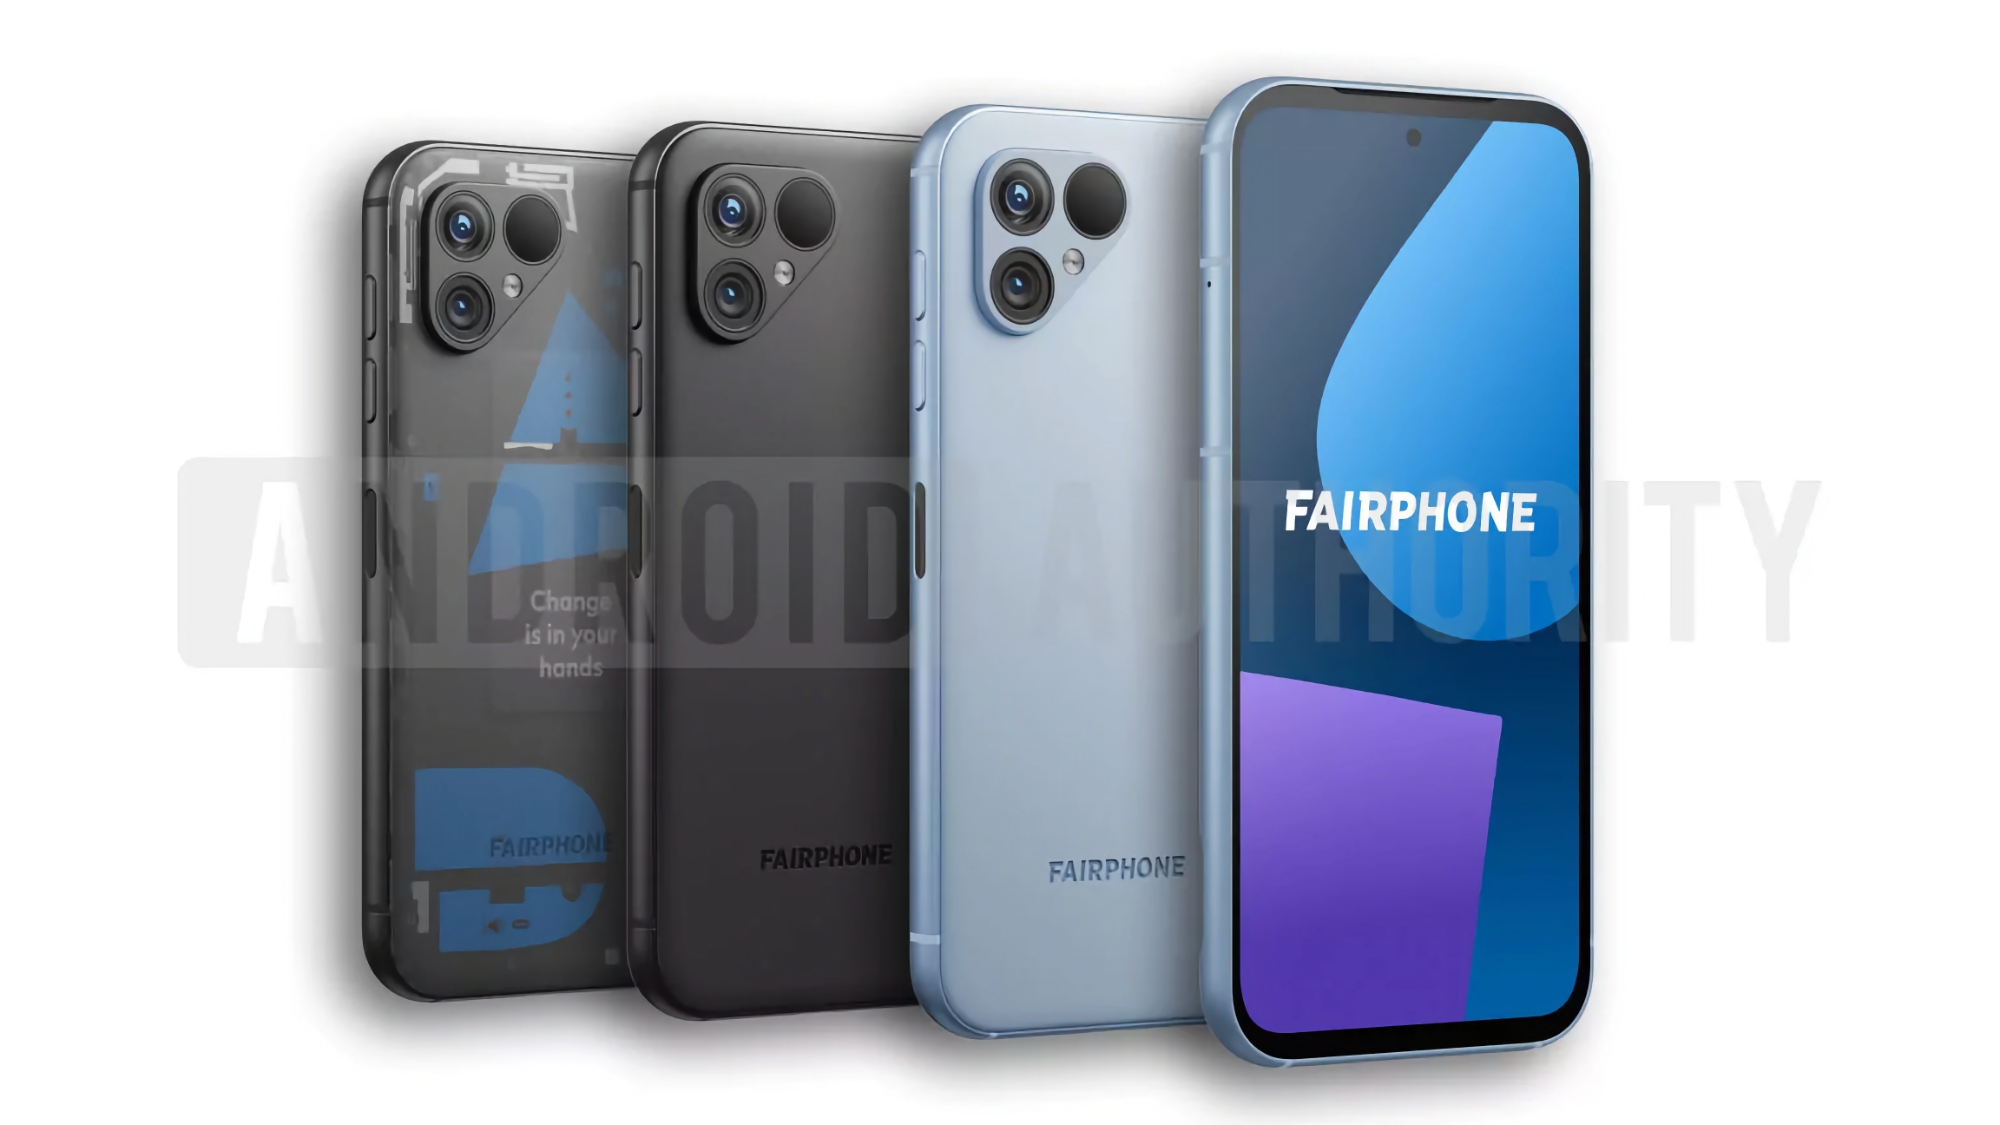 Oto jak będzie wyglądał Fairphone 5: smartfon z pięcioletnią obsługą, podwójnym aparatem i trzema kolorami